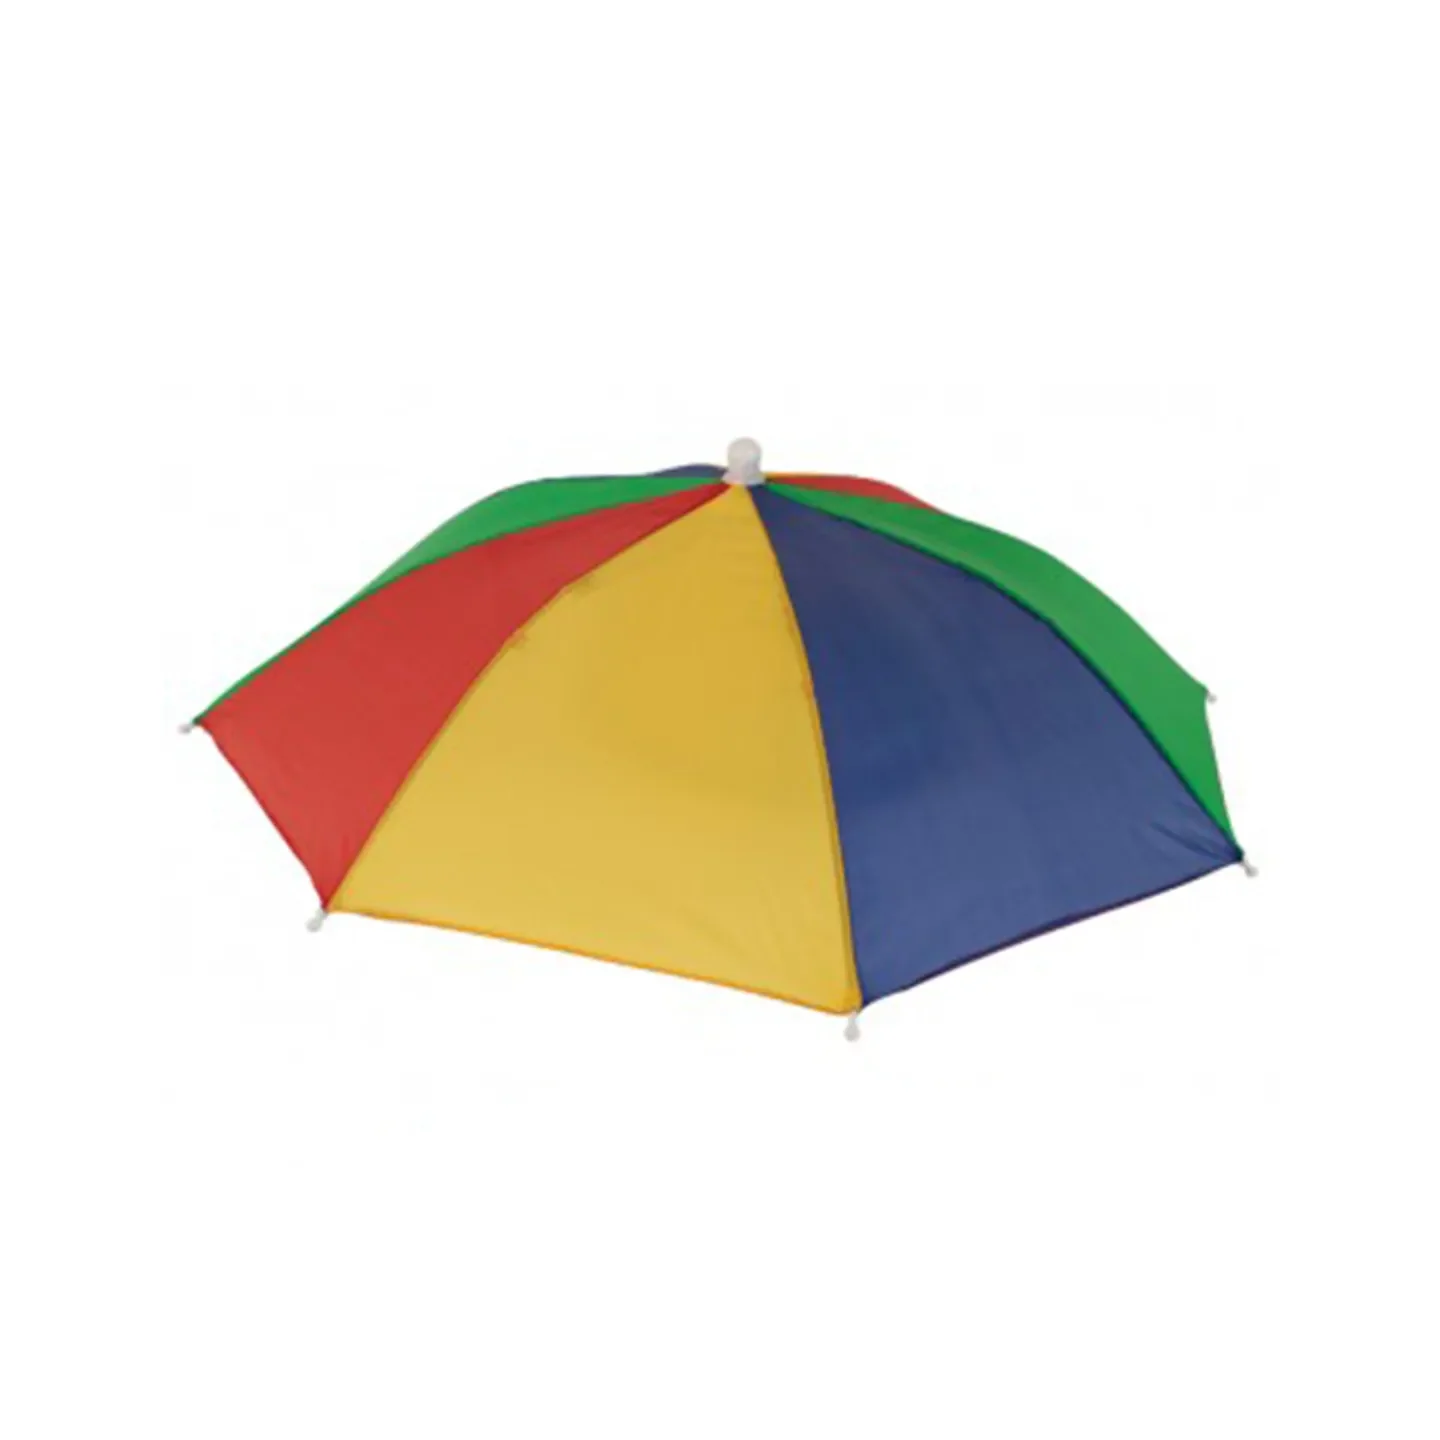 Hoofd paraplu gekleurd kopen.